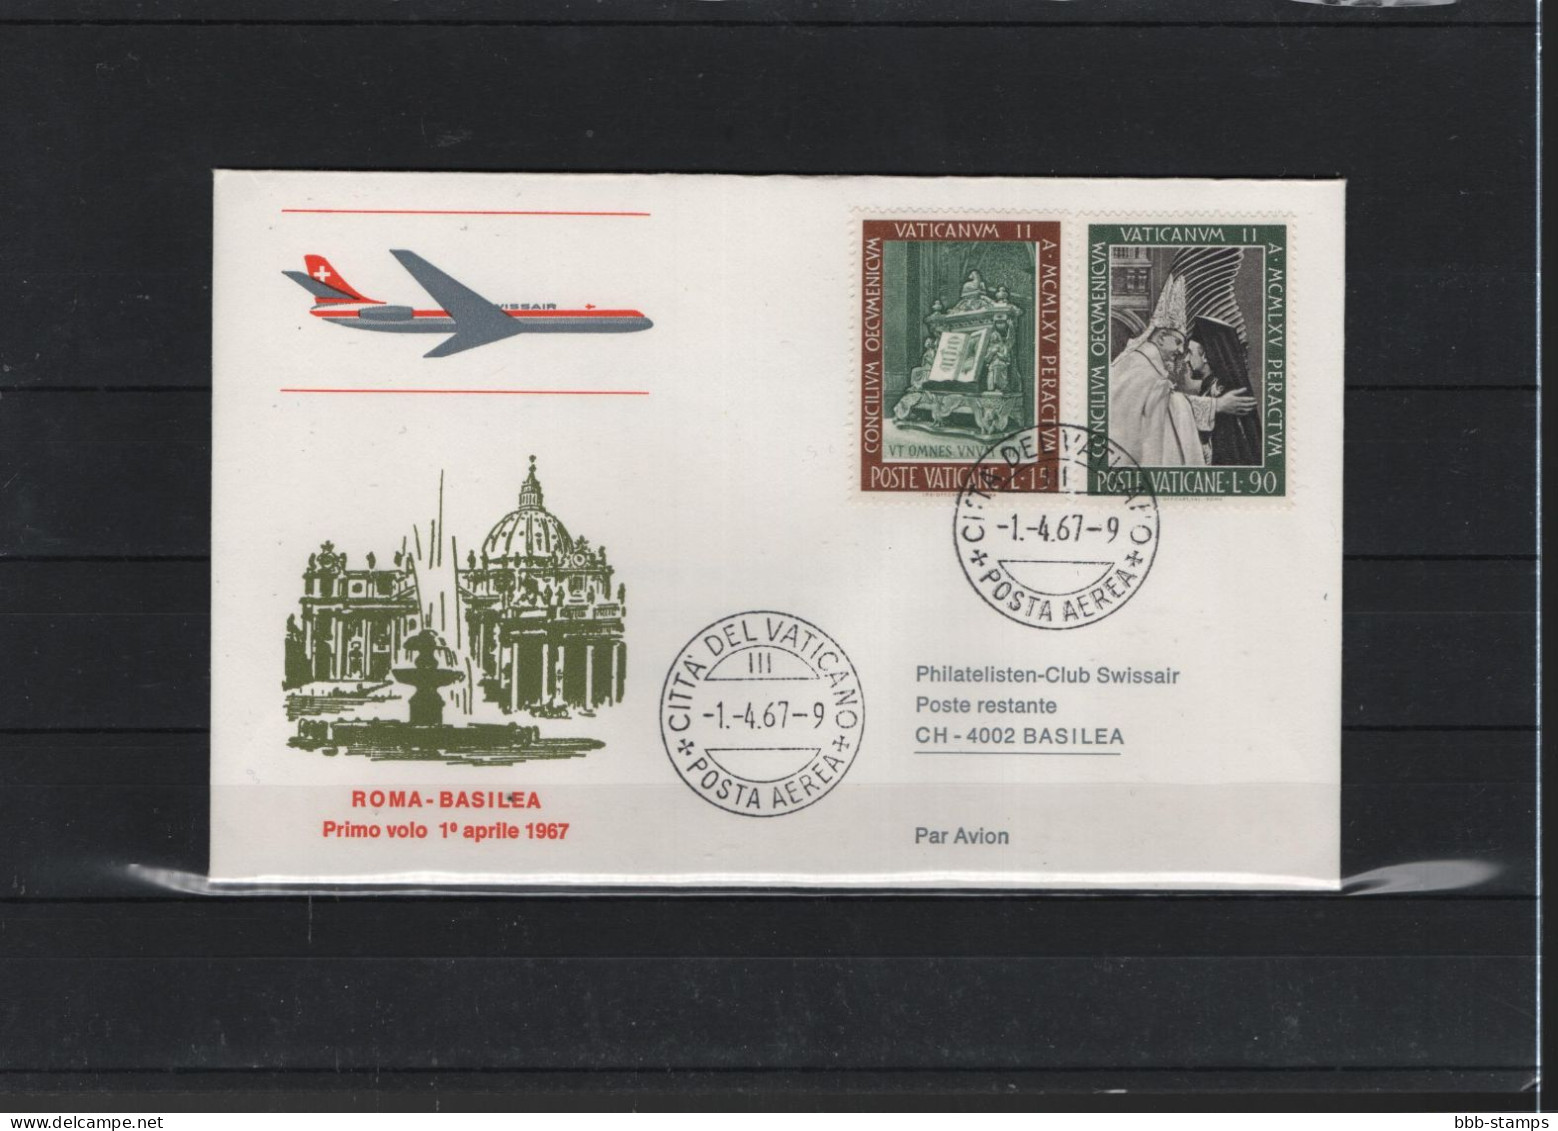 Schweiz Air Mail Swissair  FFC  1.4..1967 Basel - Rom VV - Erst- U. Sonderflugbriefe